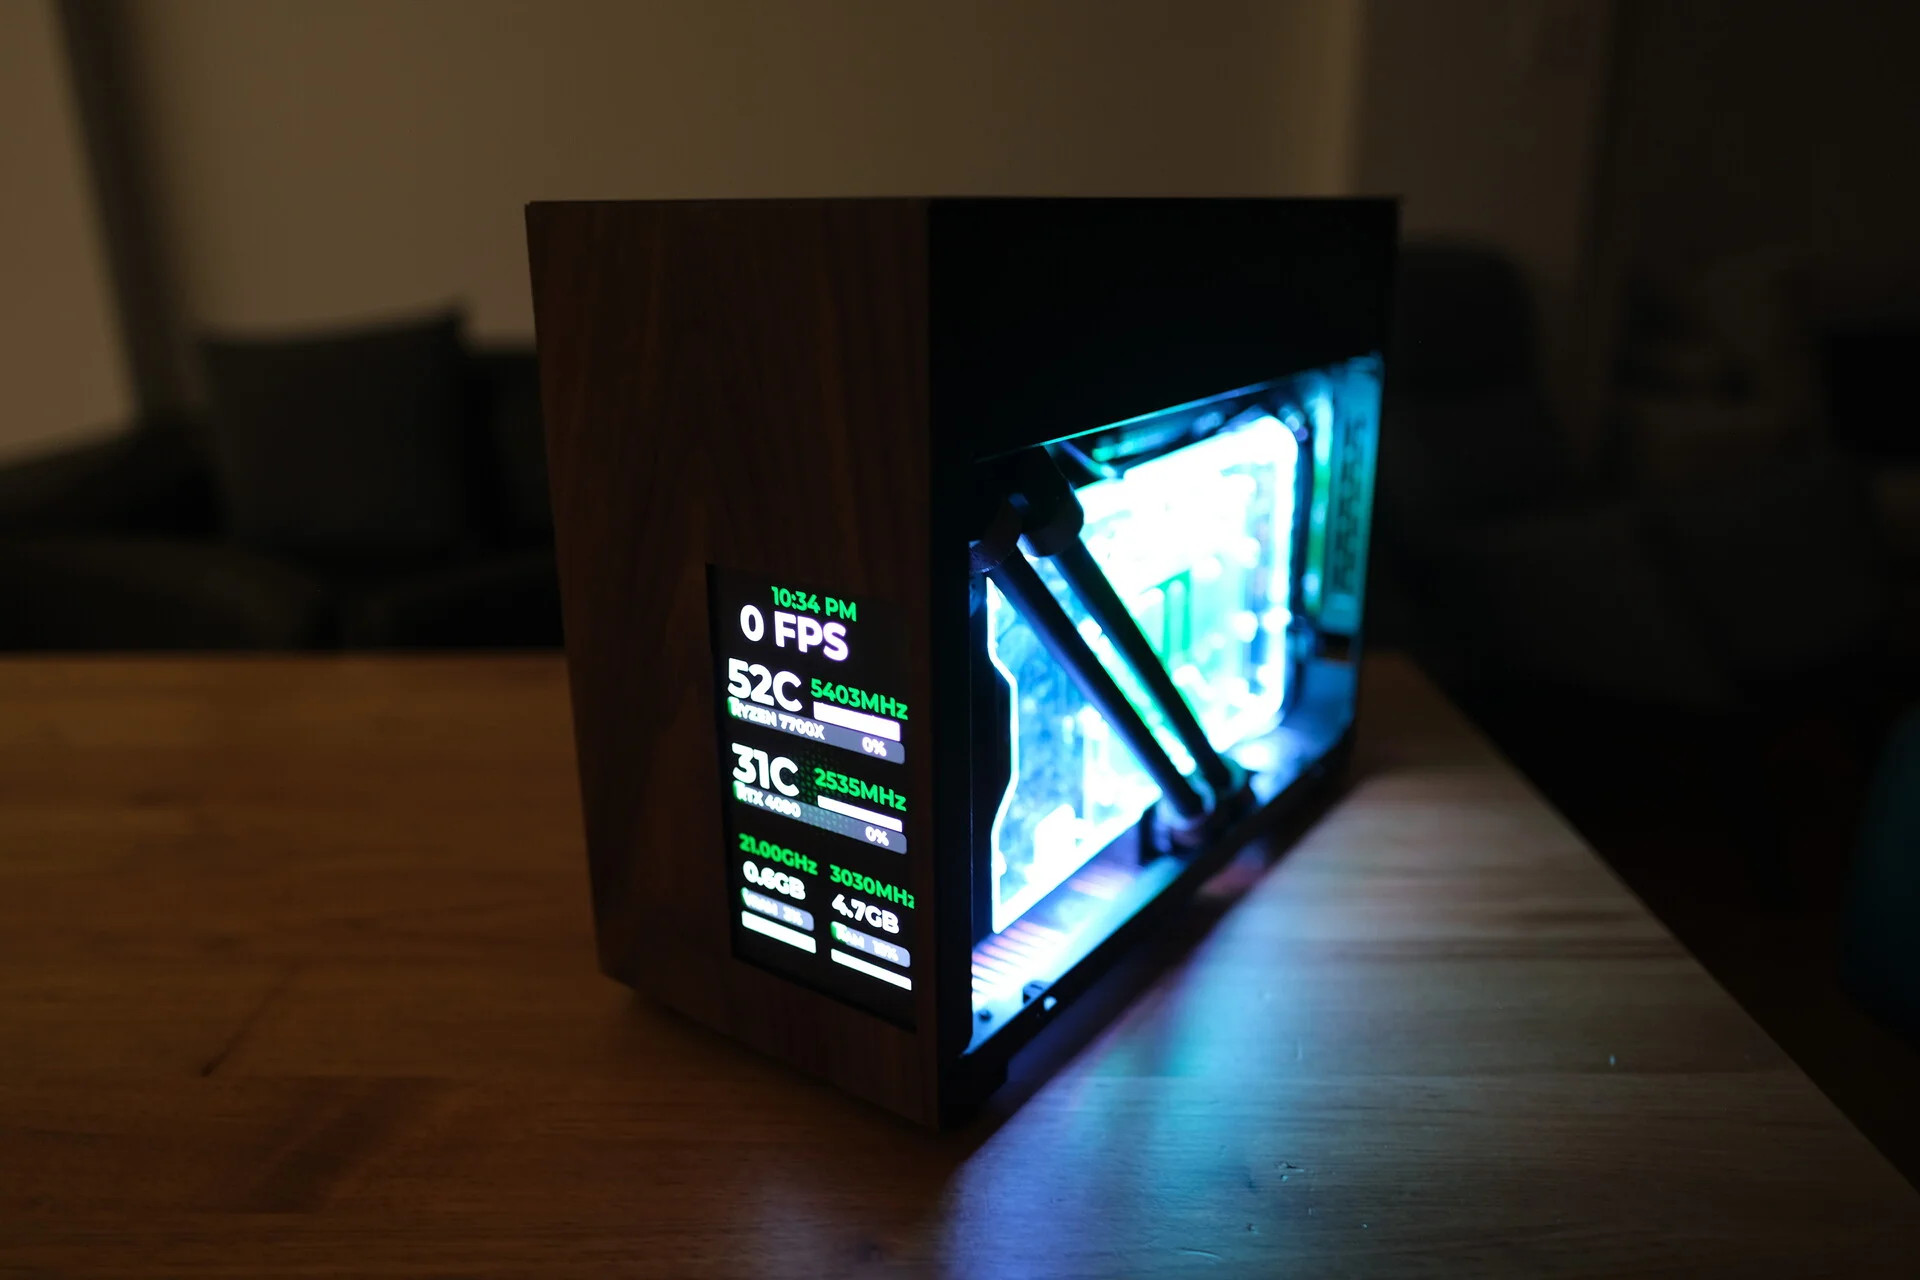 Der SFF-Holz-PC mit freiliegendem GPU-Wasserblock und einem LED-Bildschirm, der die Temperaturen anzeigt